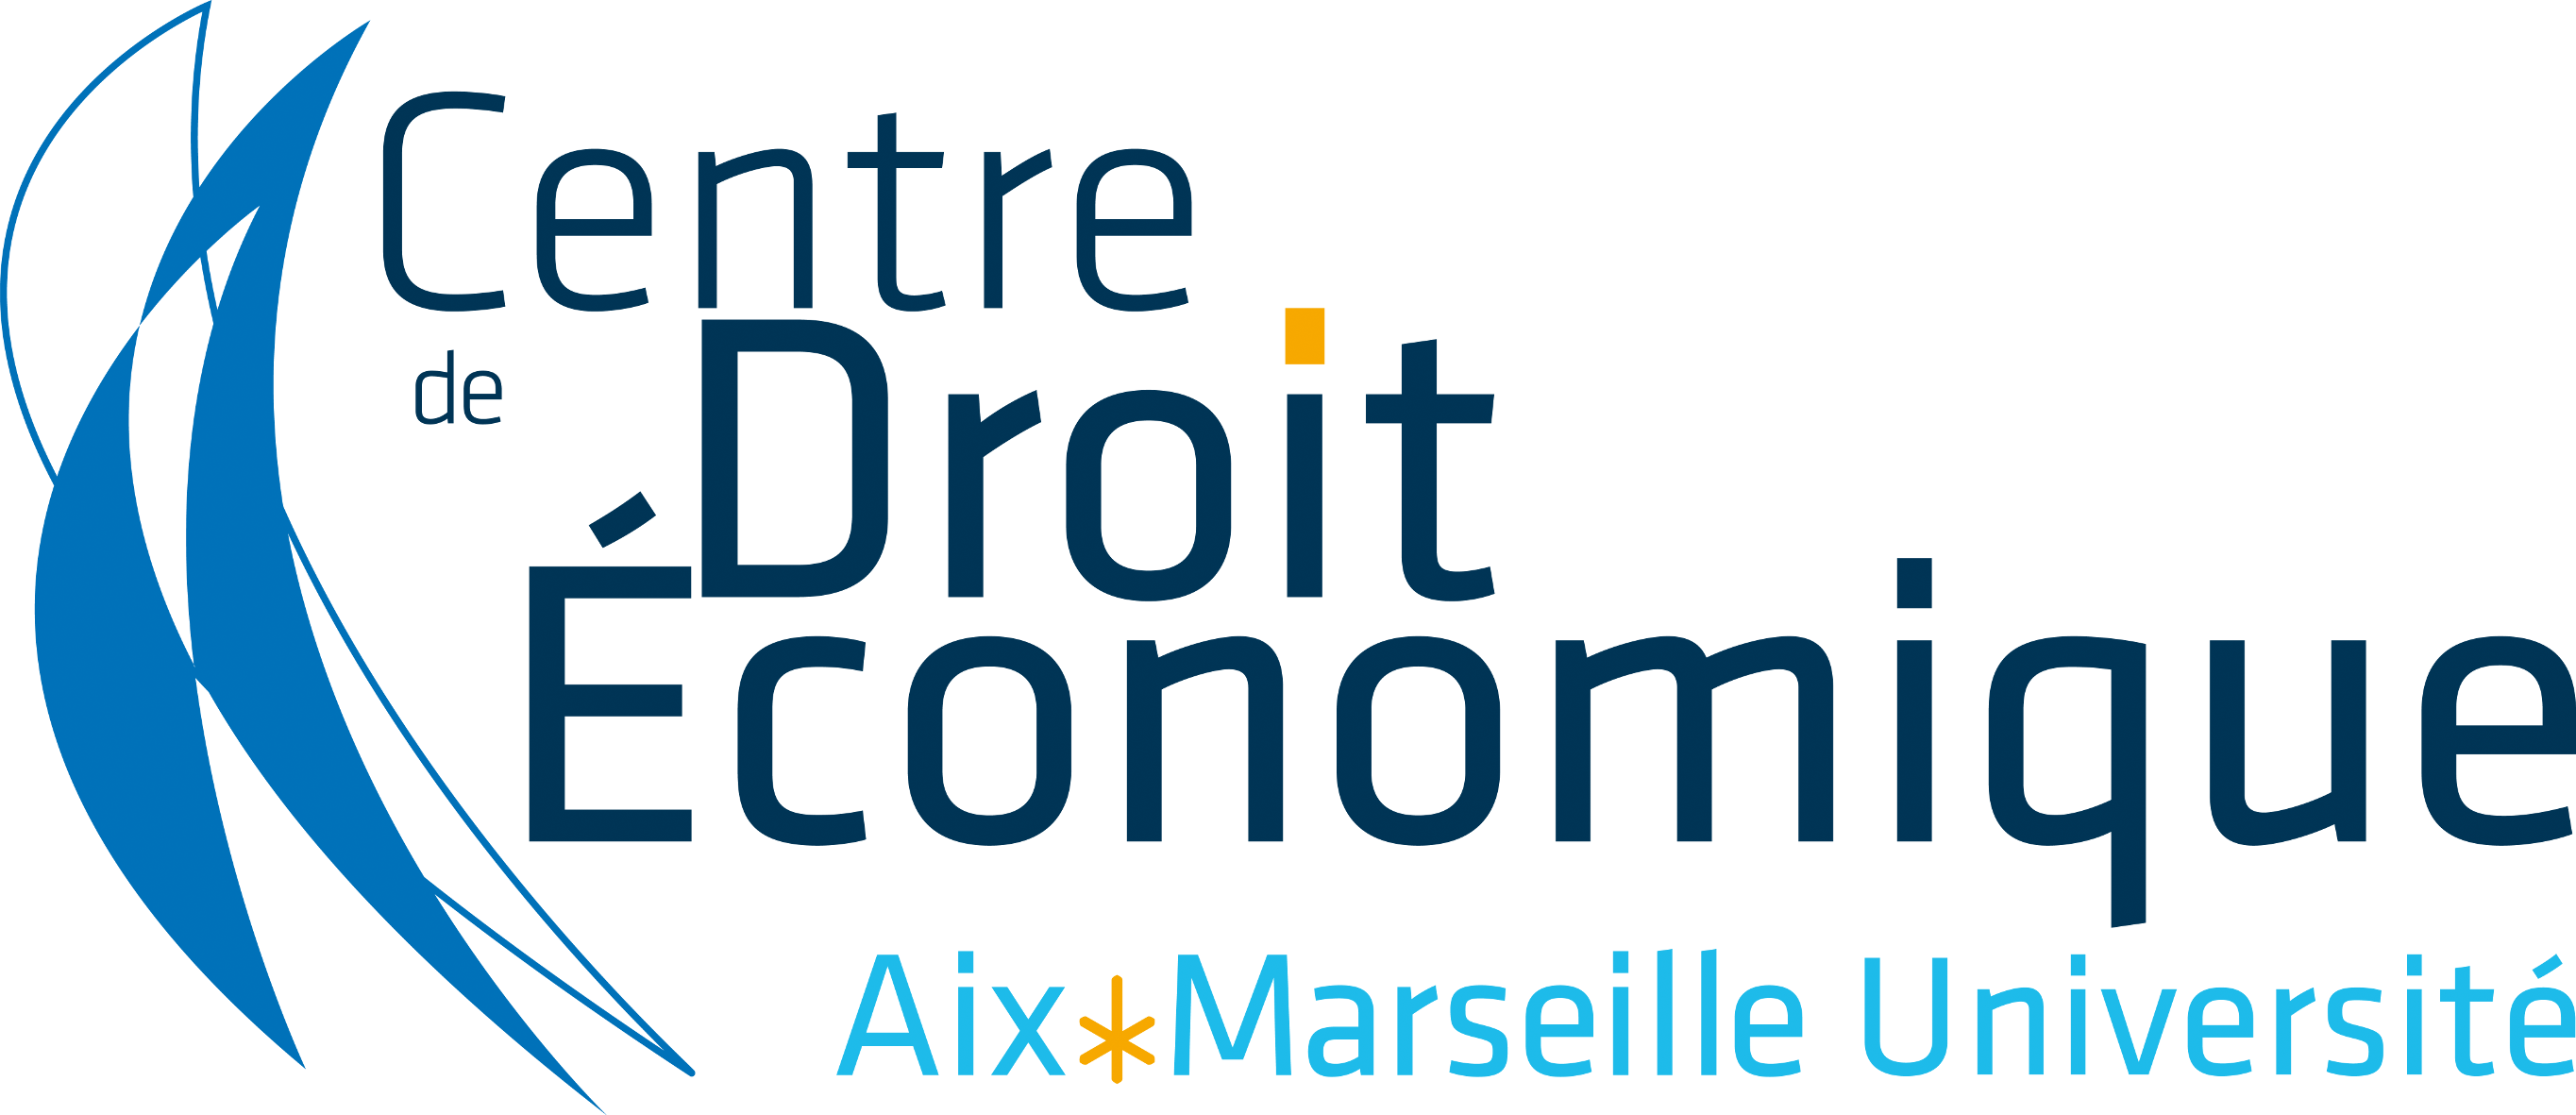 Centre de Droit Economique Aix Marseille Univeristé - le Club des métiers du Droit